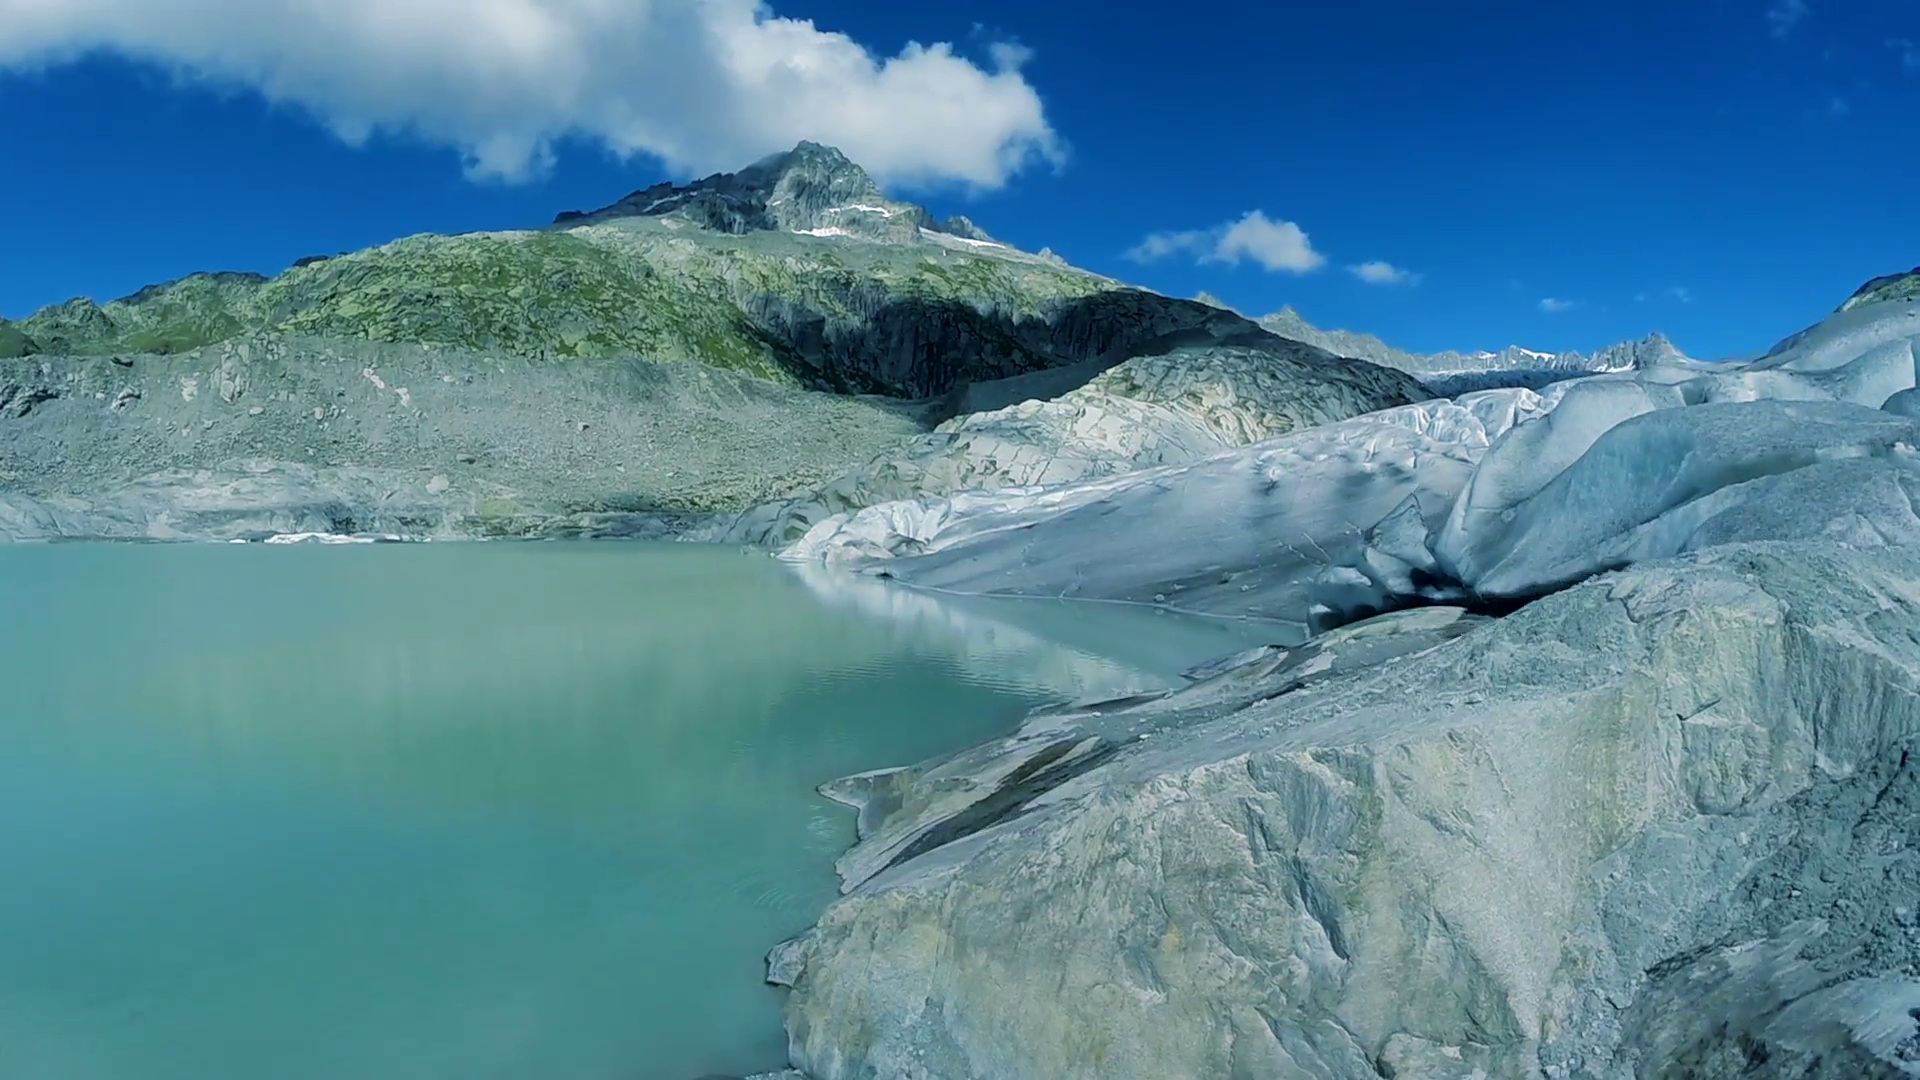 glacier landscape scenery. peaceful nature background. melting ice ...